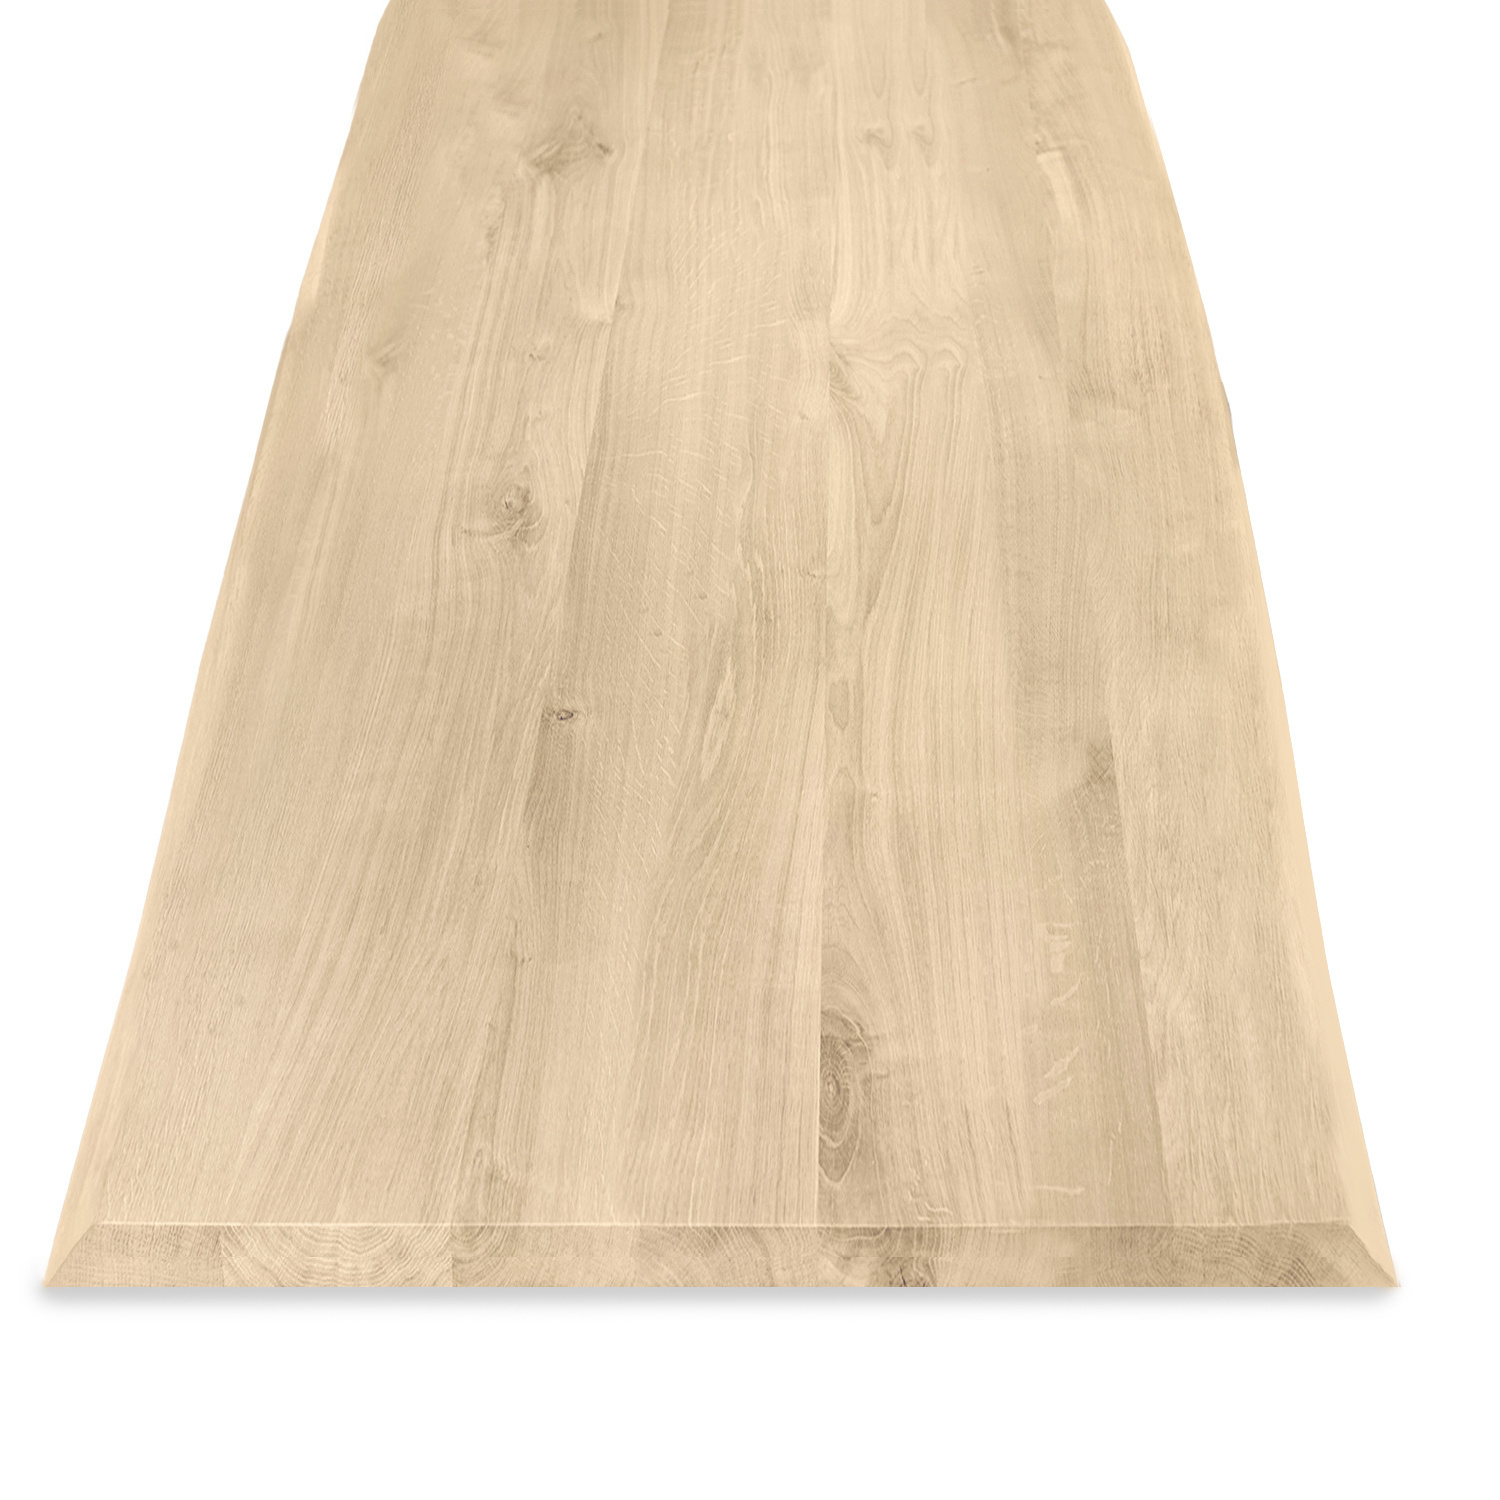  Tischplatte Eiche - mit Baumkante (Optik)  - nach Maß - 2,7 cm dick (1-Schicht) - Breite Lamellen (10 - 12 cm breit) - Eichenholz rustikal mit natürlichen Baumkant - verleimt & künstlich getrocknet (HF 8-12%) - 50-120x50-248 cm